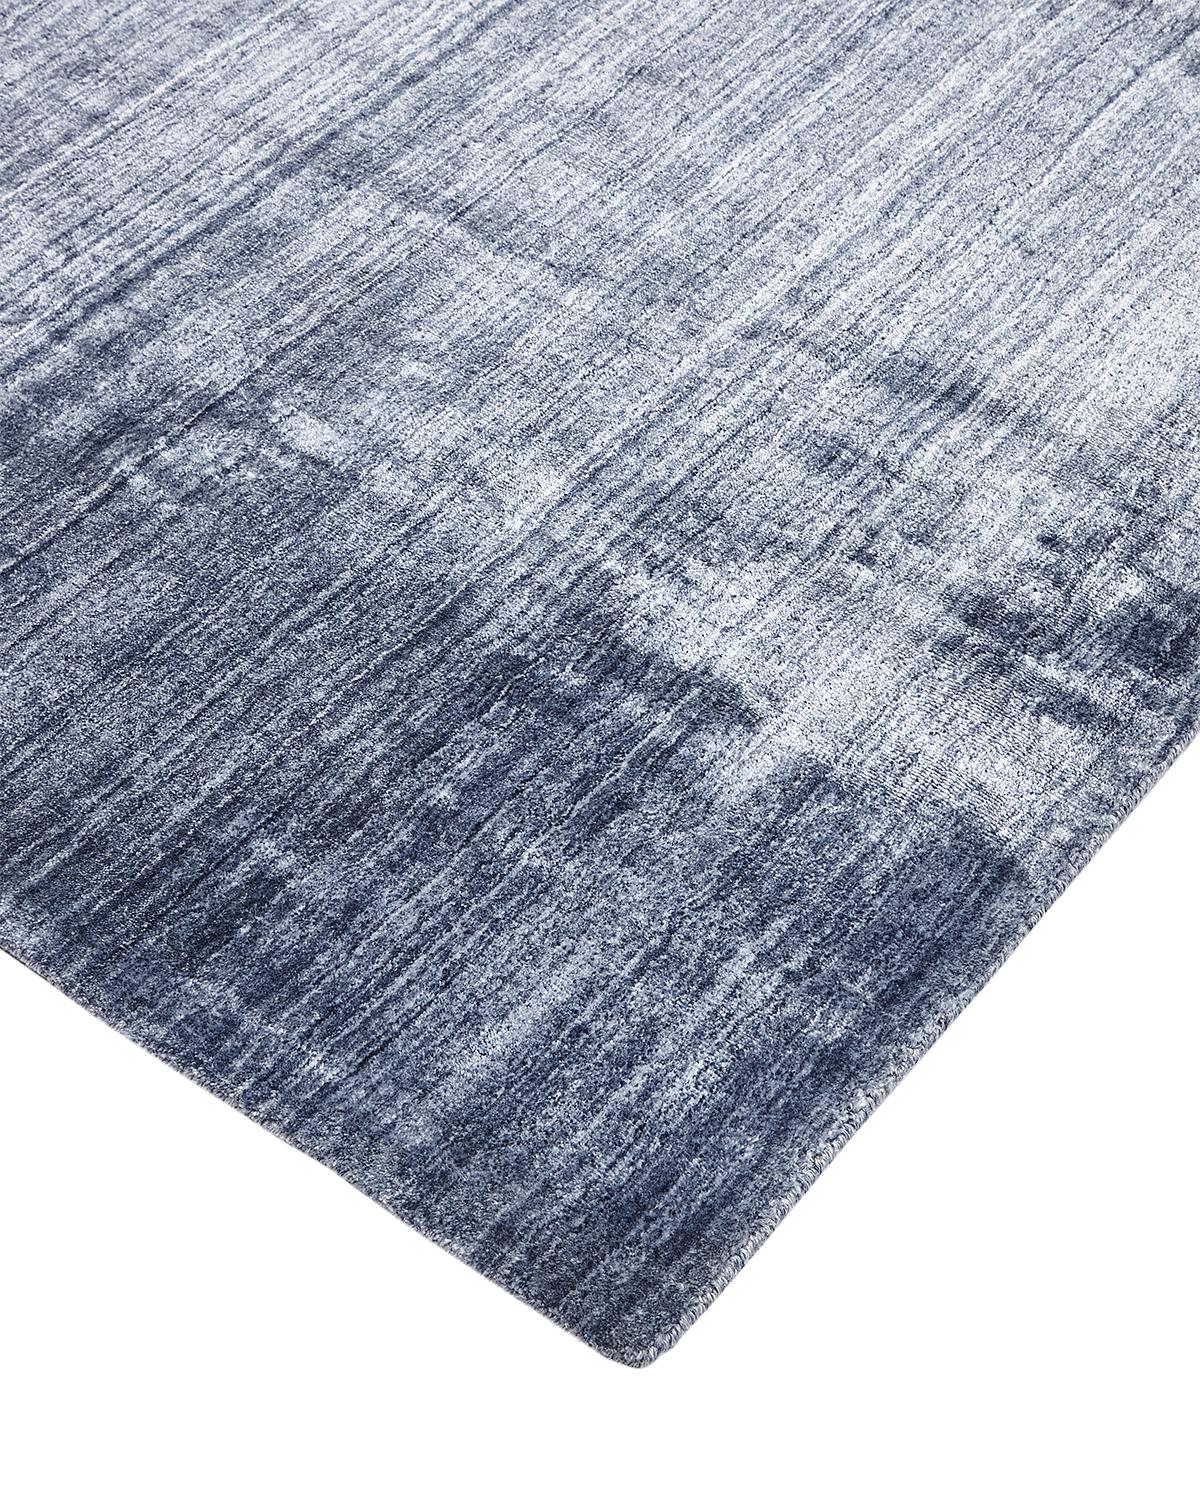 Ton-in-Ton-Streifen verleihen der Solid-Kollektion Tiefe und Raffinesse. Diese Teppiche bringen einen unerwarteten, aber willkommenen Farbakzent in einen ansonsten neutralen Raum. Sie werden von geschickten Kunsthandwerkern in Indien handgefertigt